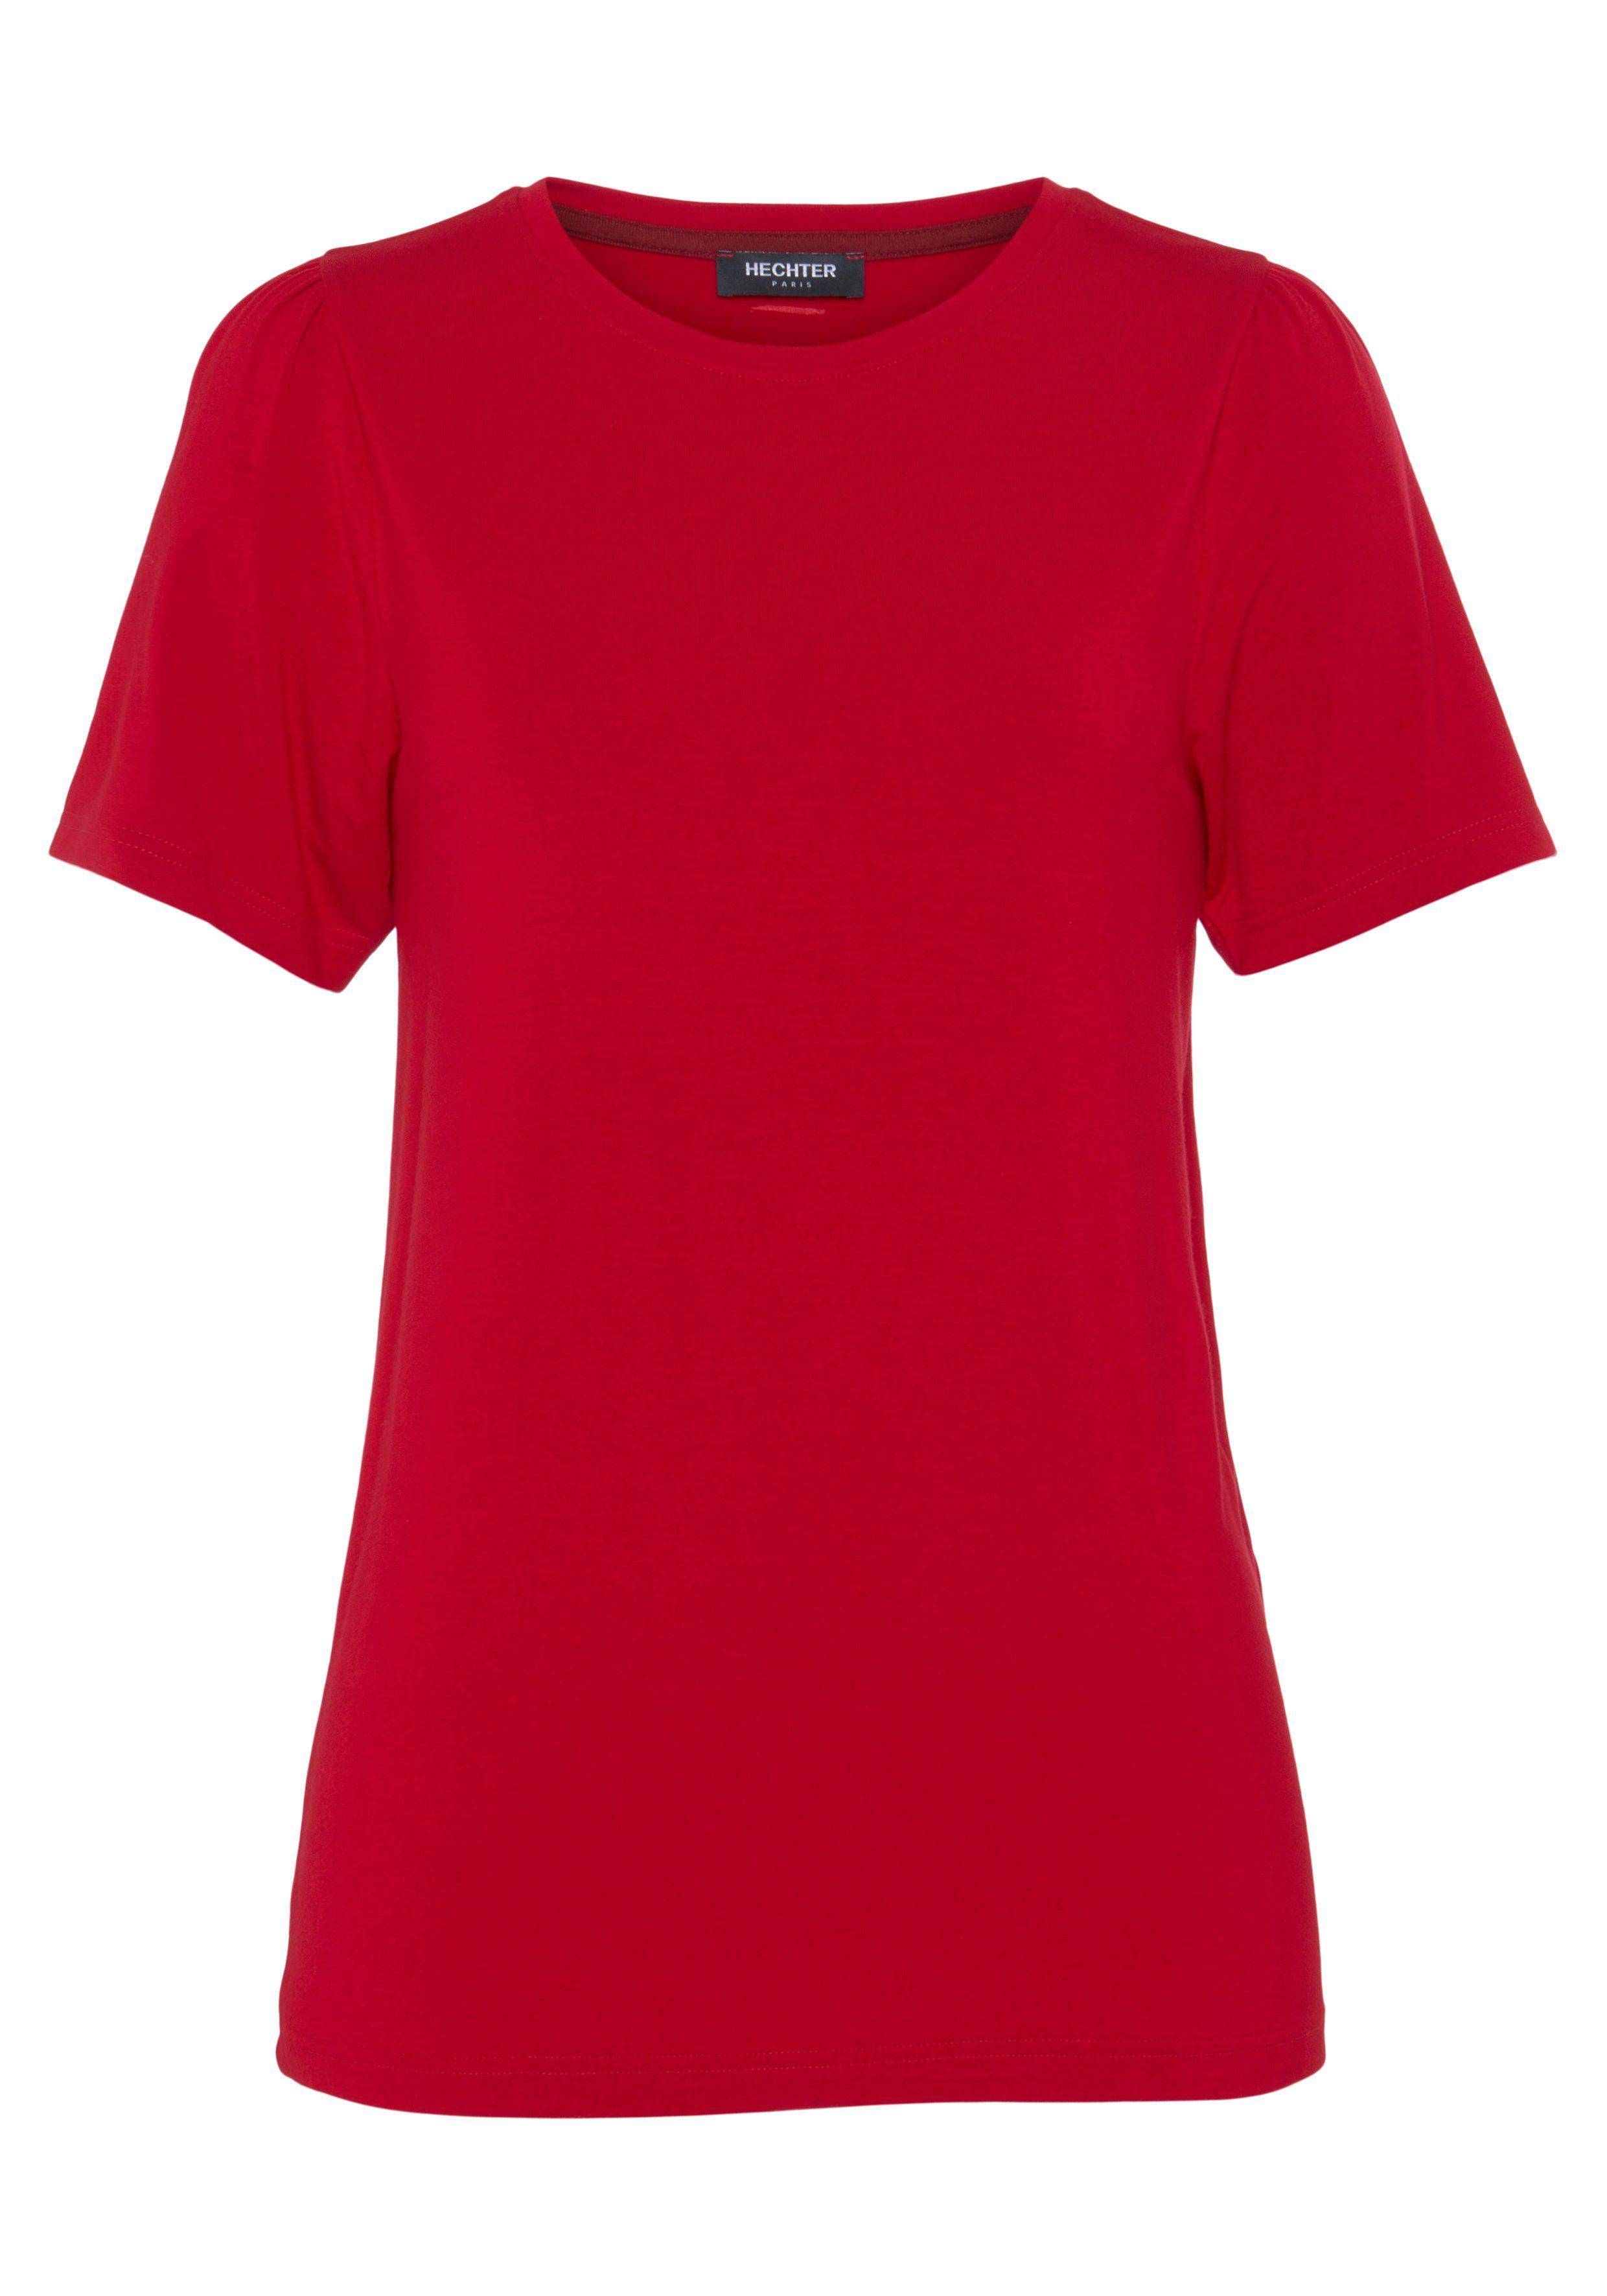 PARIS HECHTER mit T-Shirt rot Puffschultern